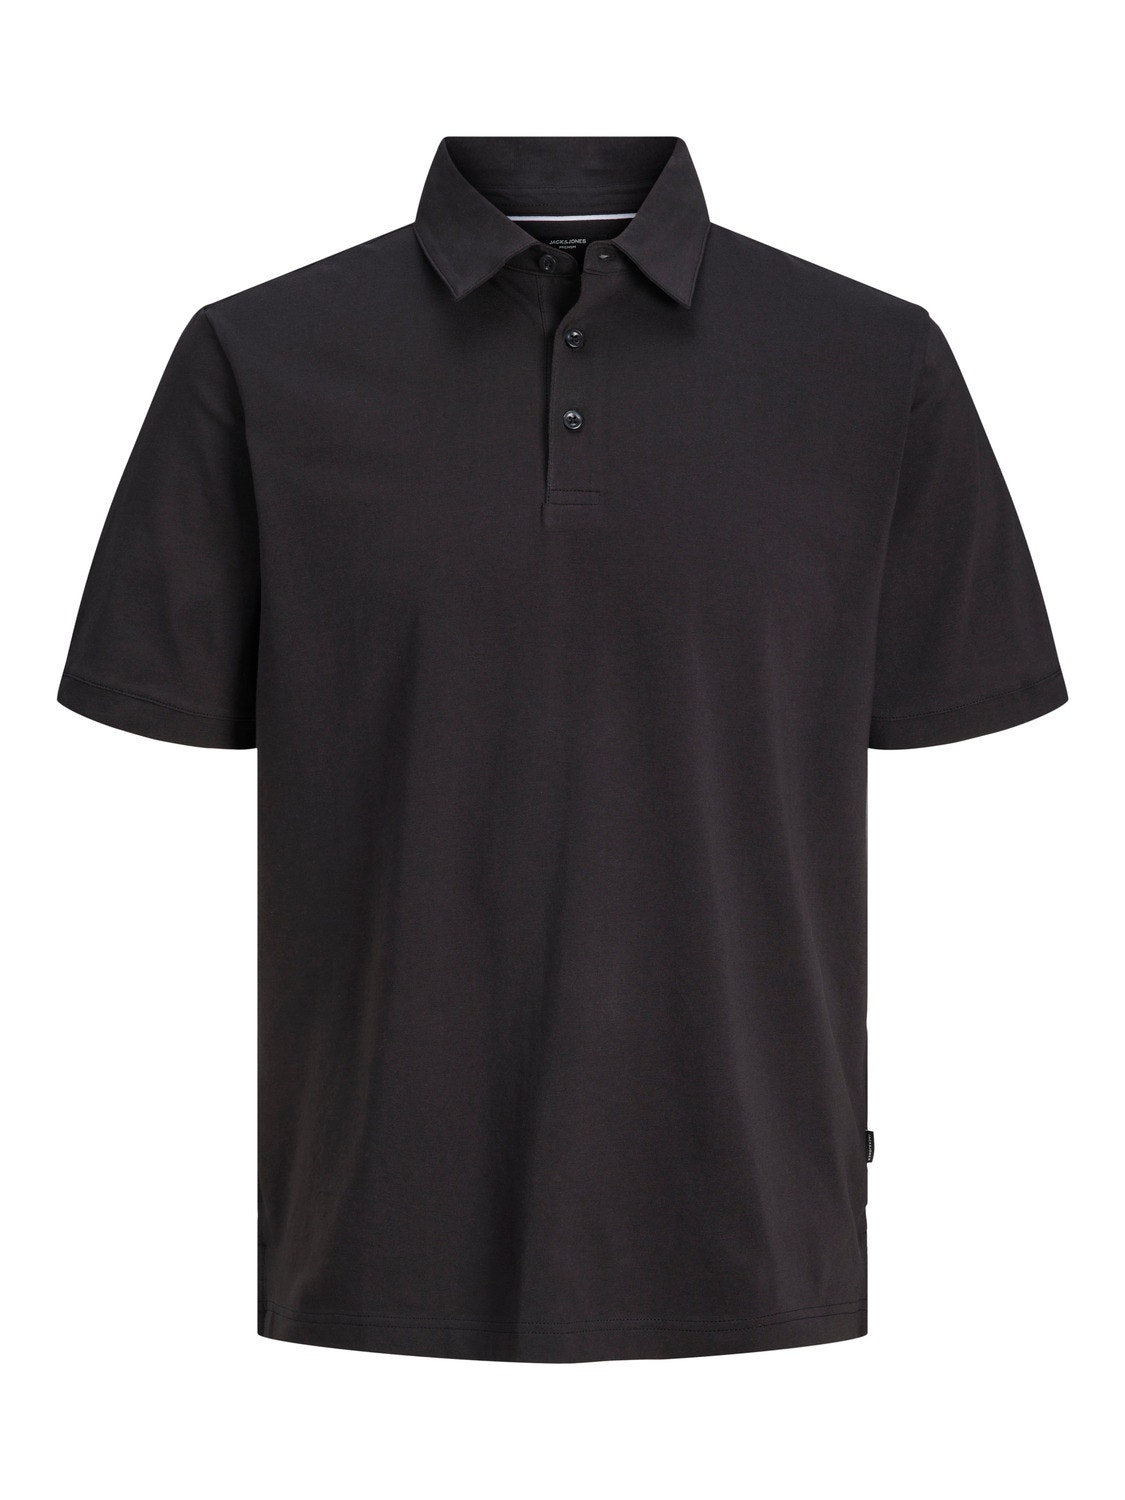 Jack & Jones Enfärgat Polo T-shirt -Black Onyx - 12251349